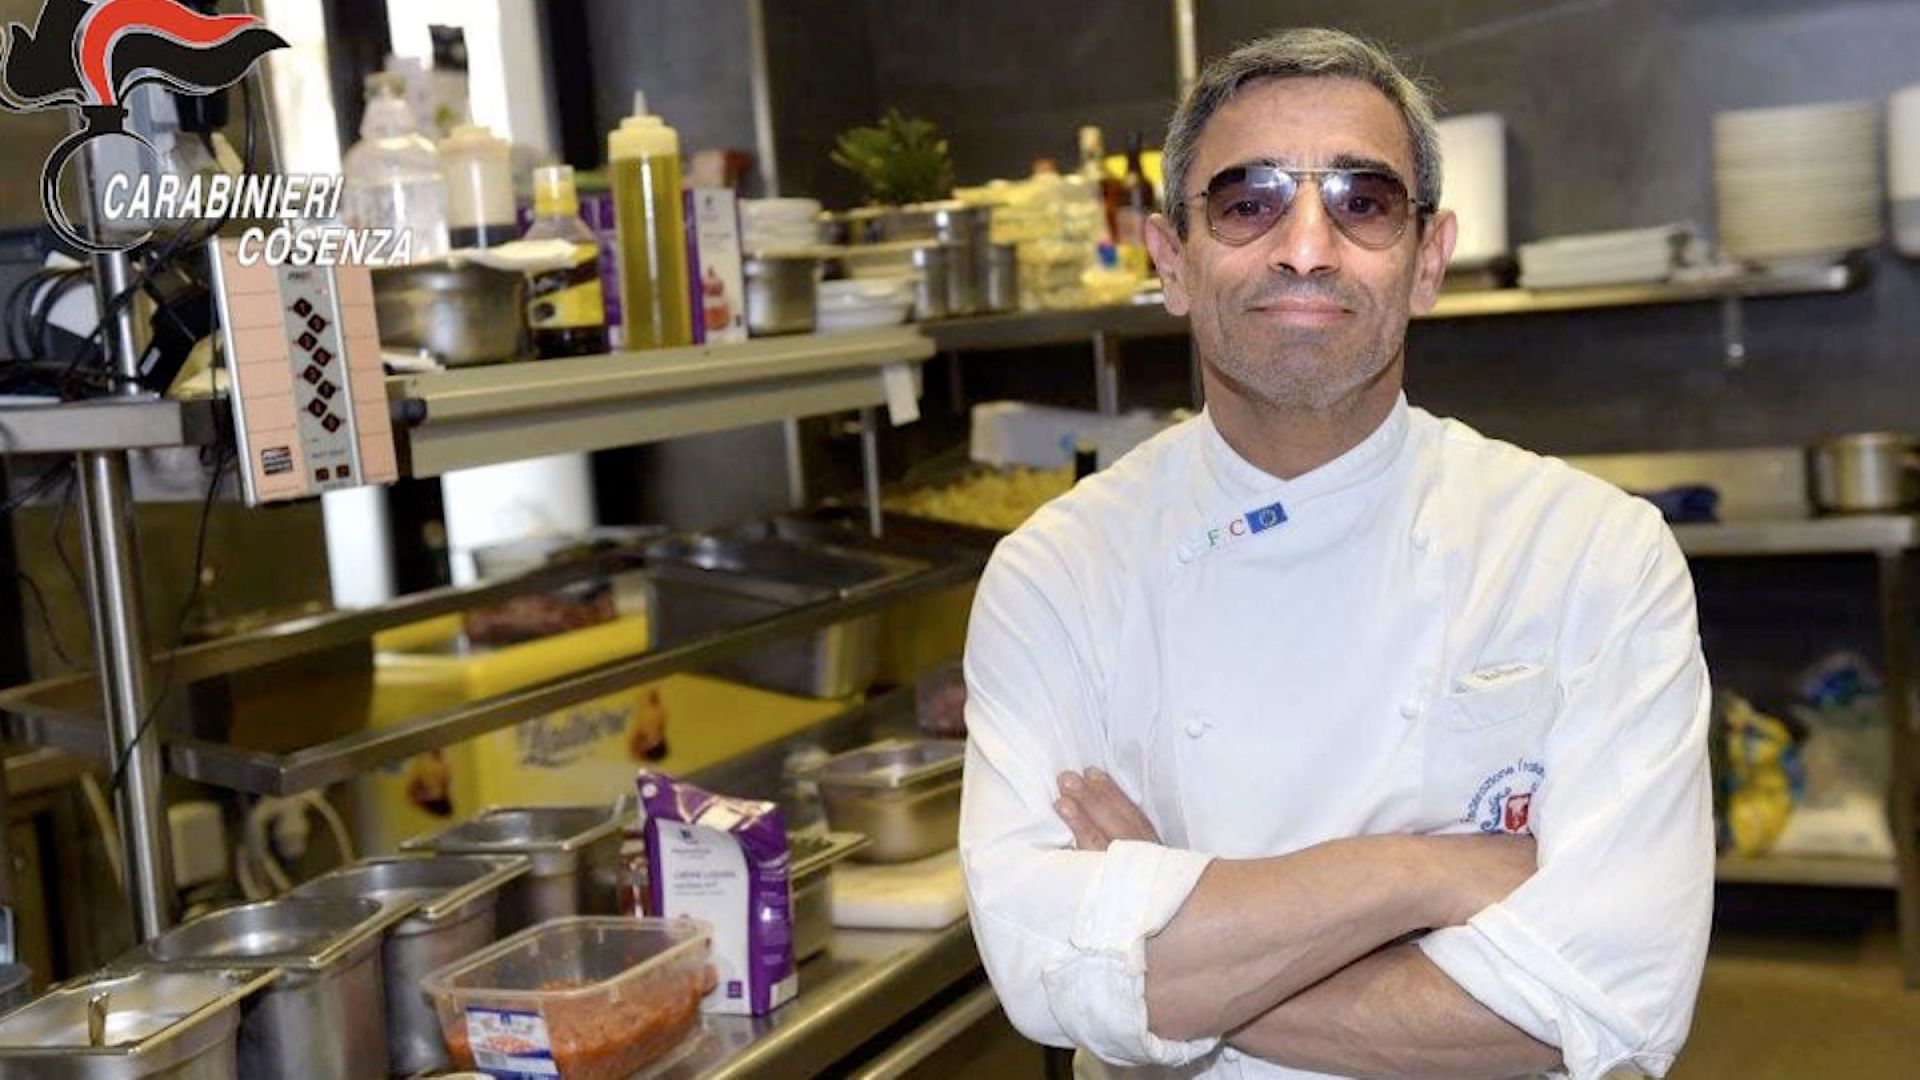 Terungkap jadi koki di restoran pizza,  bos mafia Italia buronan 16 tahun diciduk 